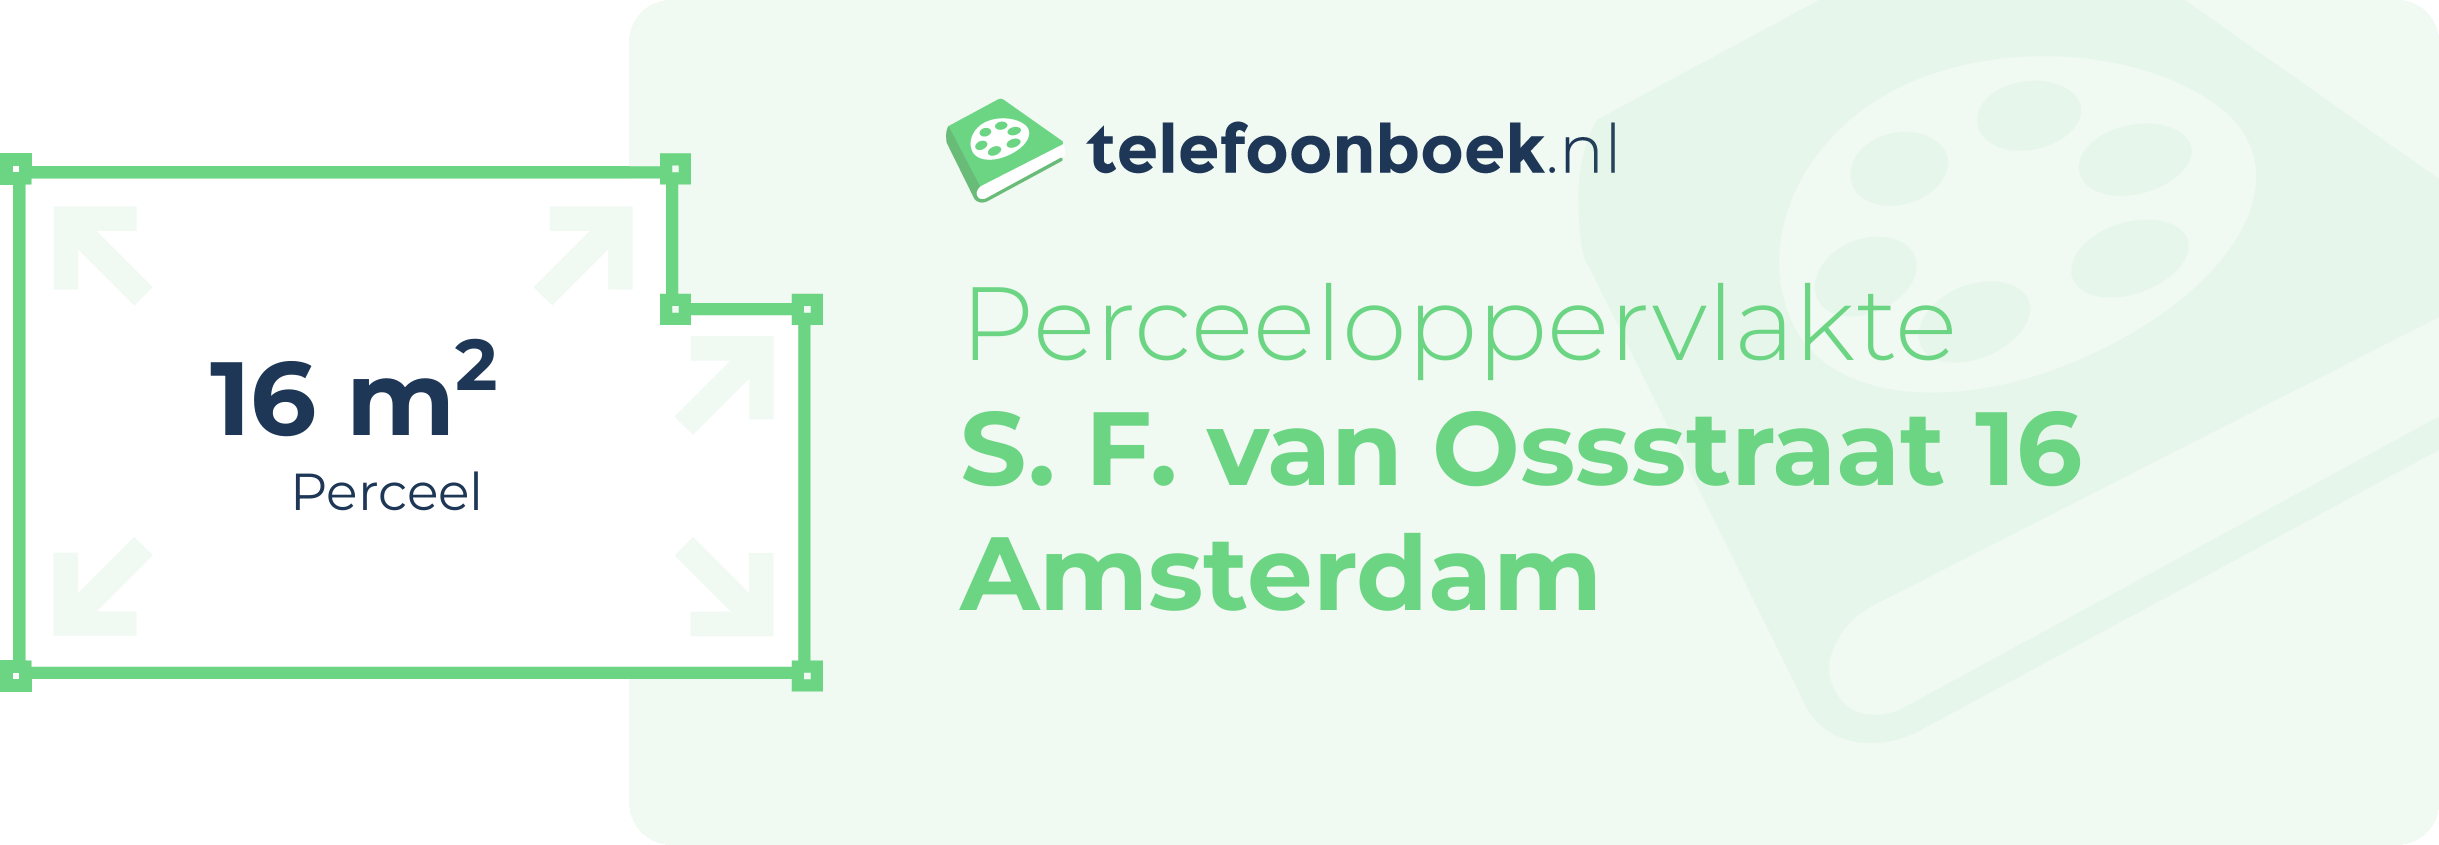 Perceeloppervlakte S. F. Van Ossstraat 16 Amsterdam